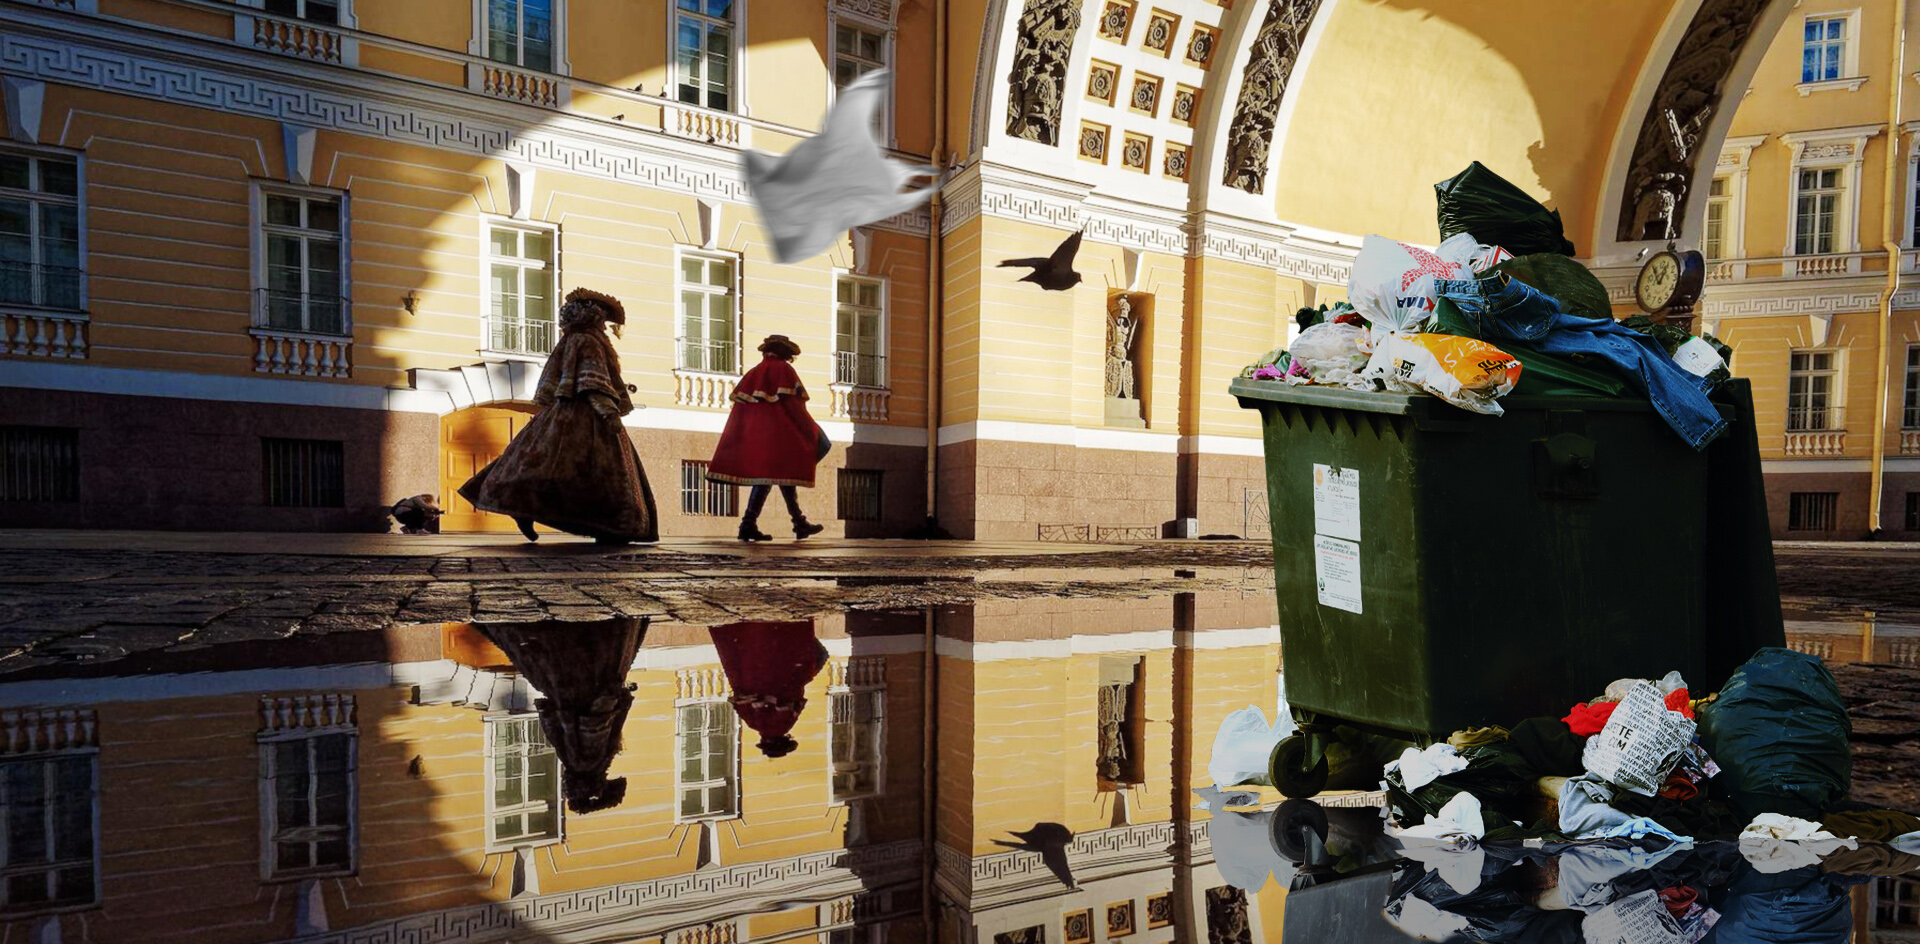 Ковальчуки и ВТБ не помогли очистить Петербург от мусора